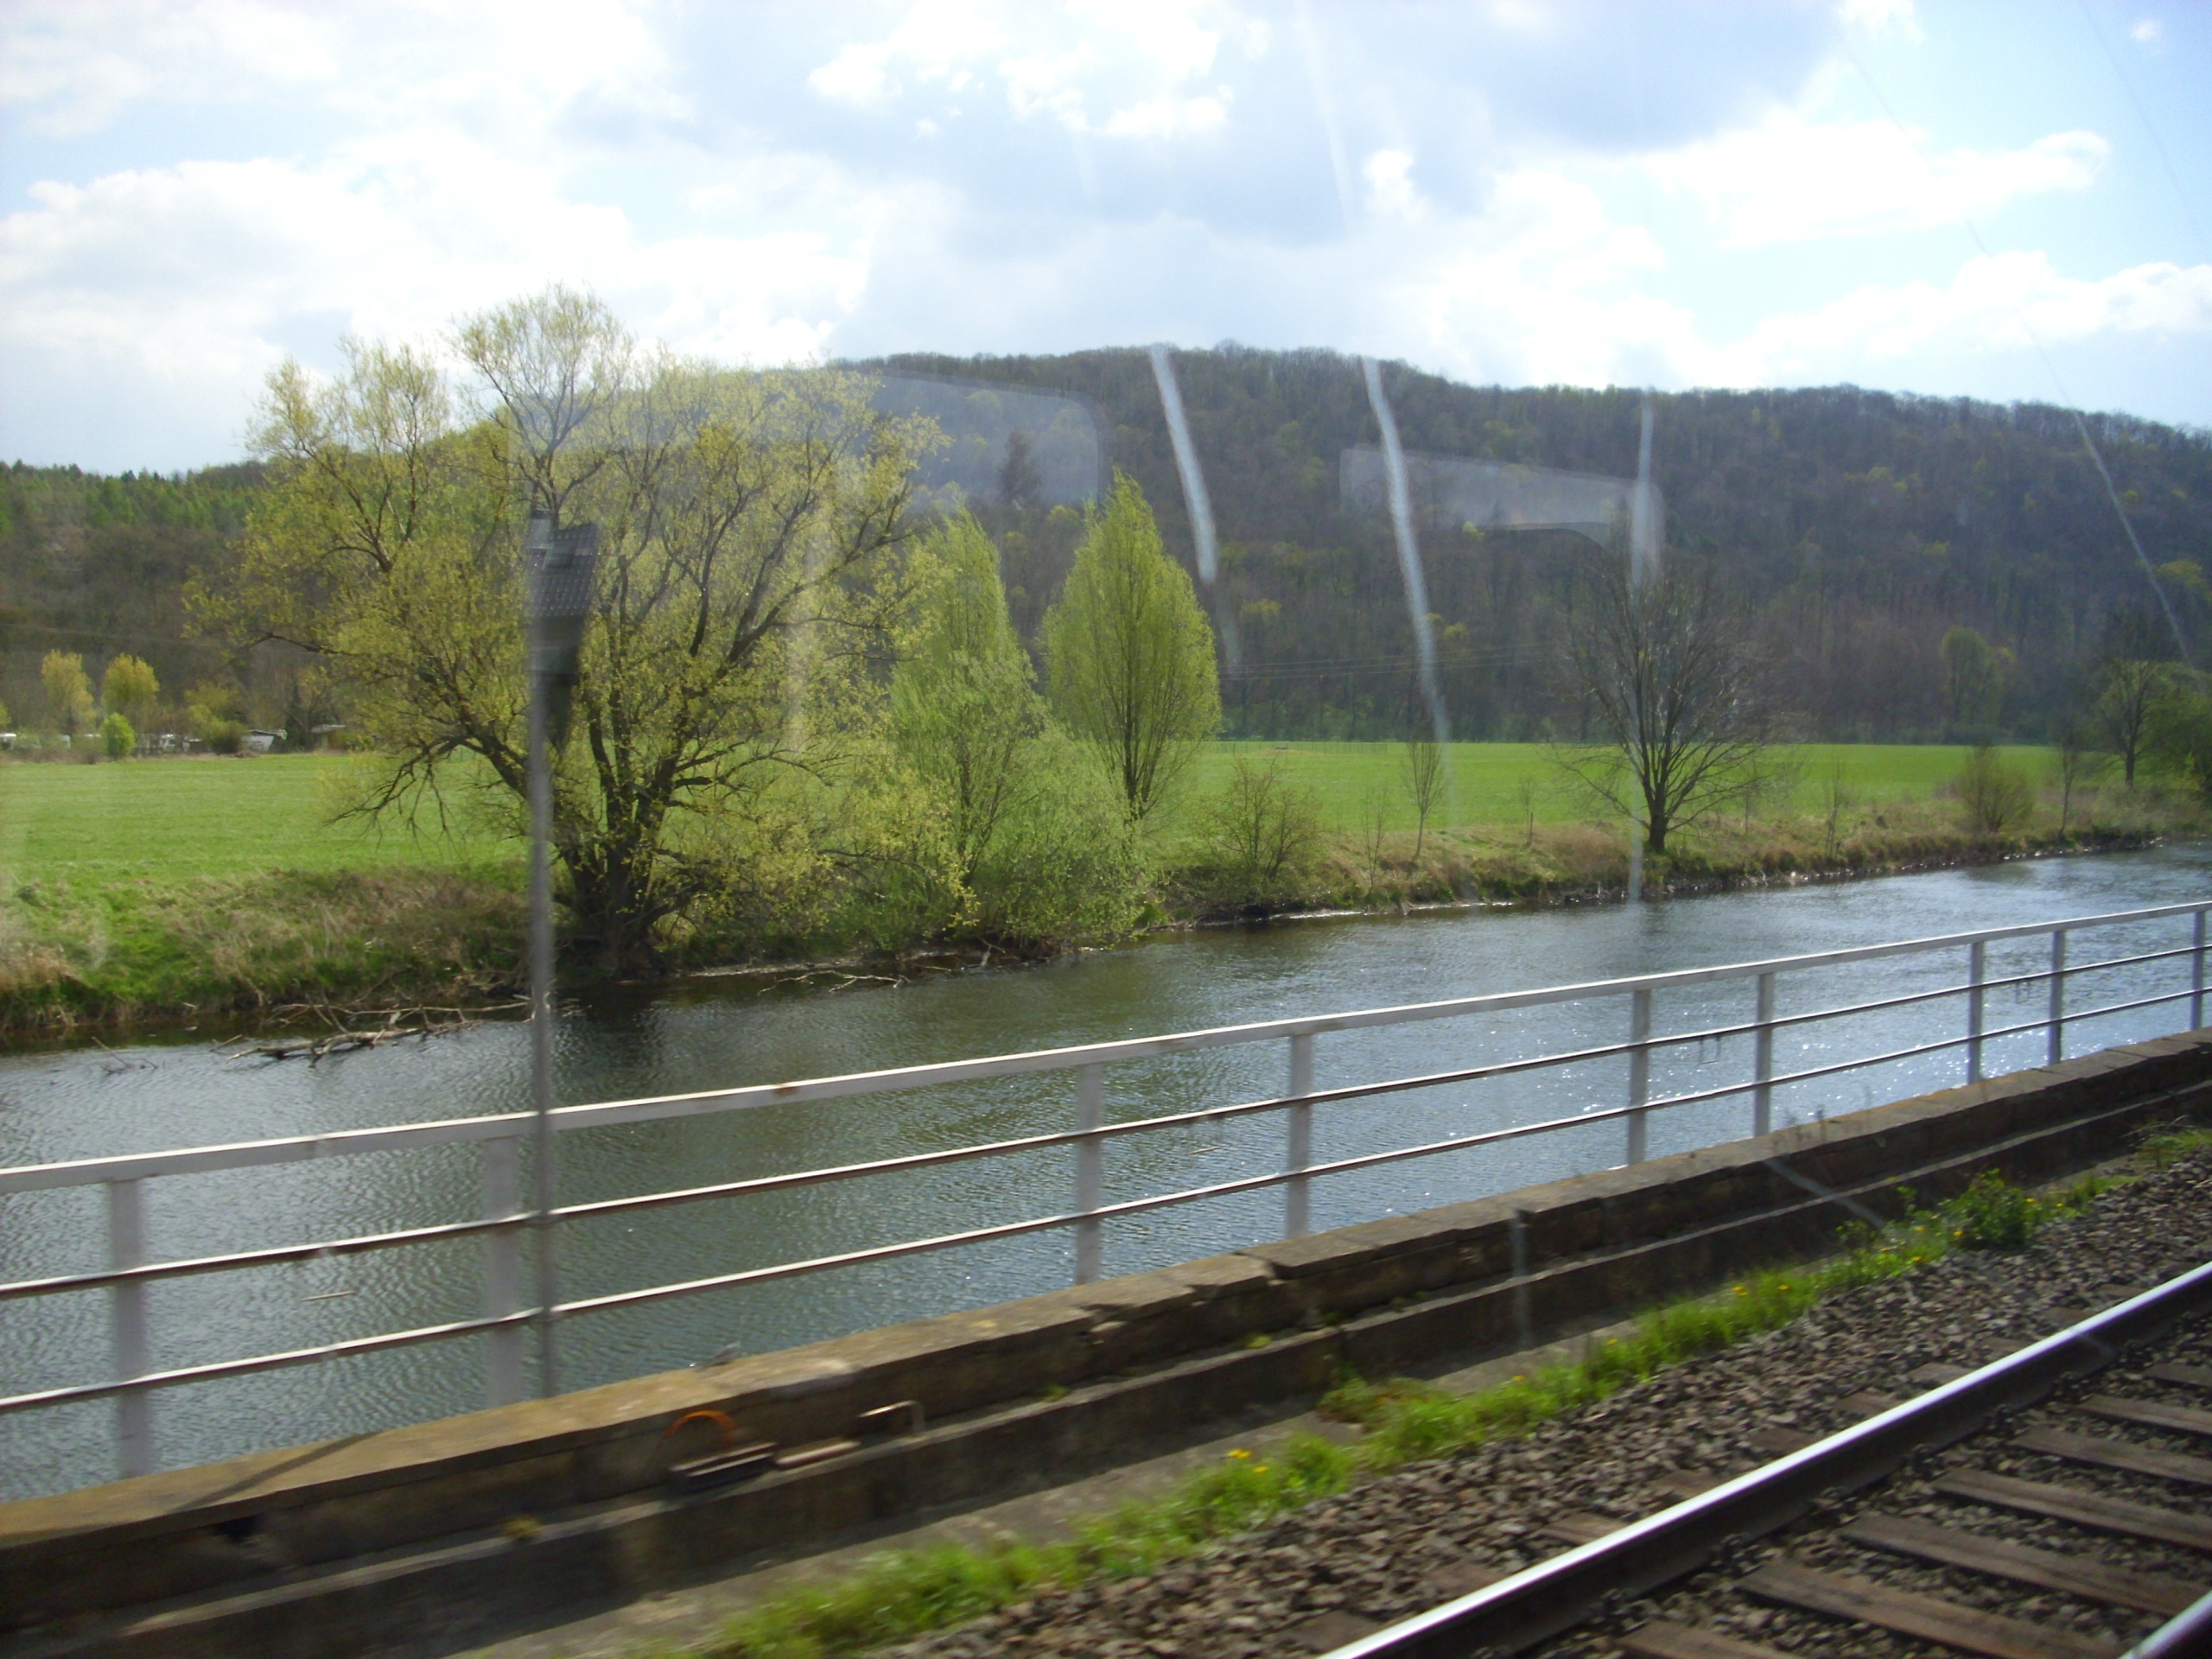 Farbfoto: Blick aus der fahrenden Eisenbahn auf die Saale im Saaletal bei Bad Kösen am Sonntag dem 22. April im Jahre 2012. Fotograf: Bernd Paepcke.